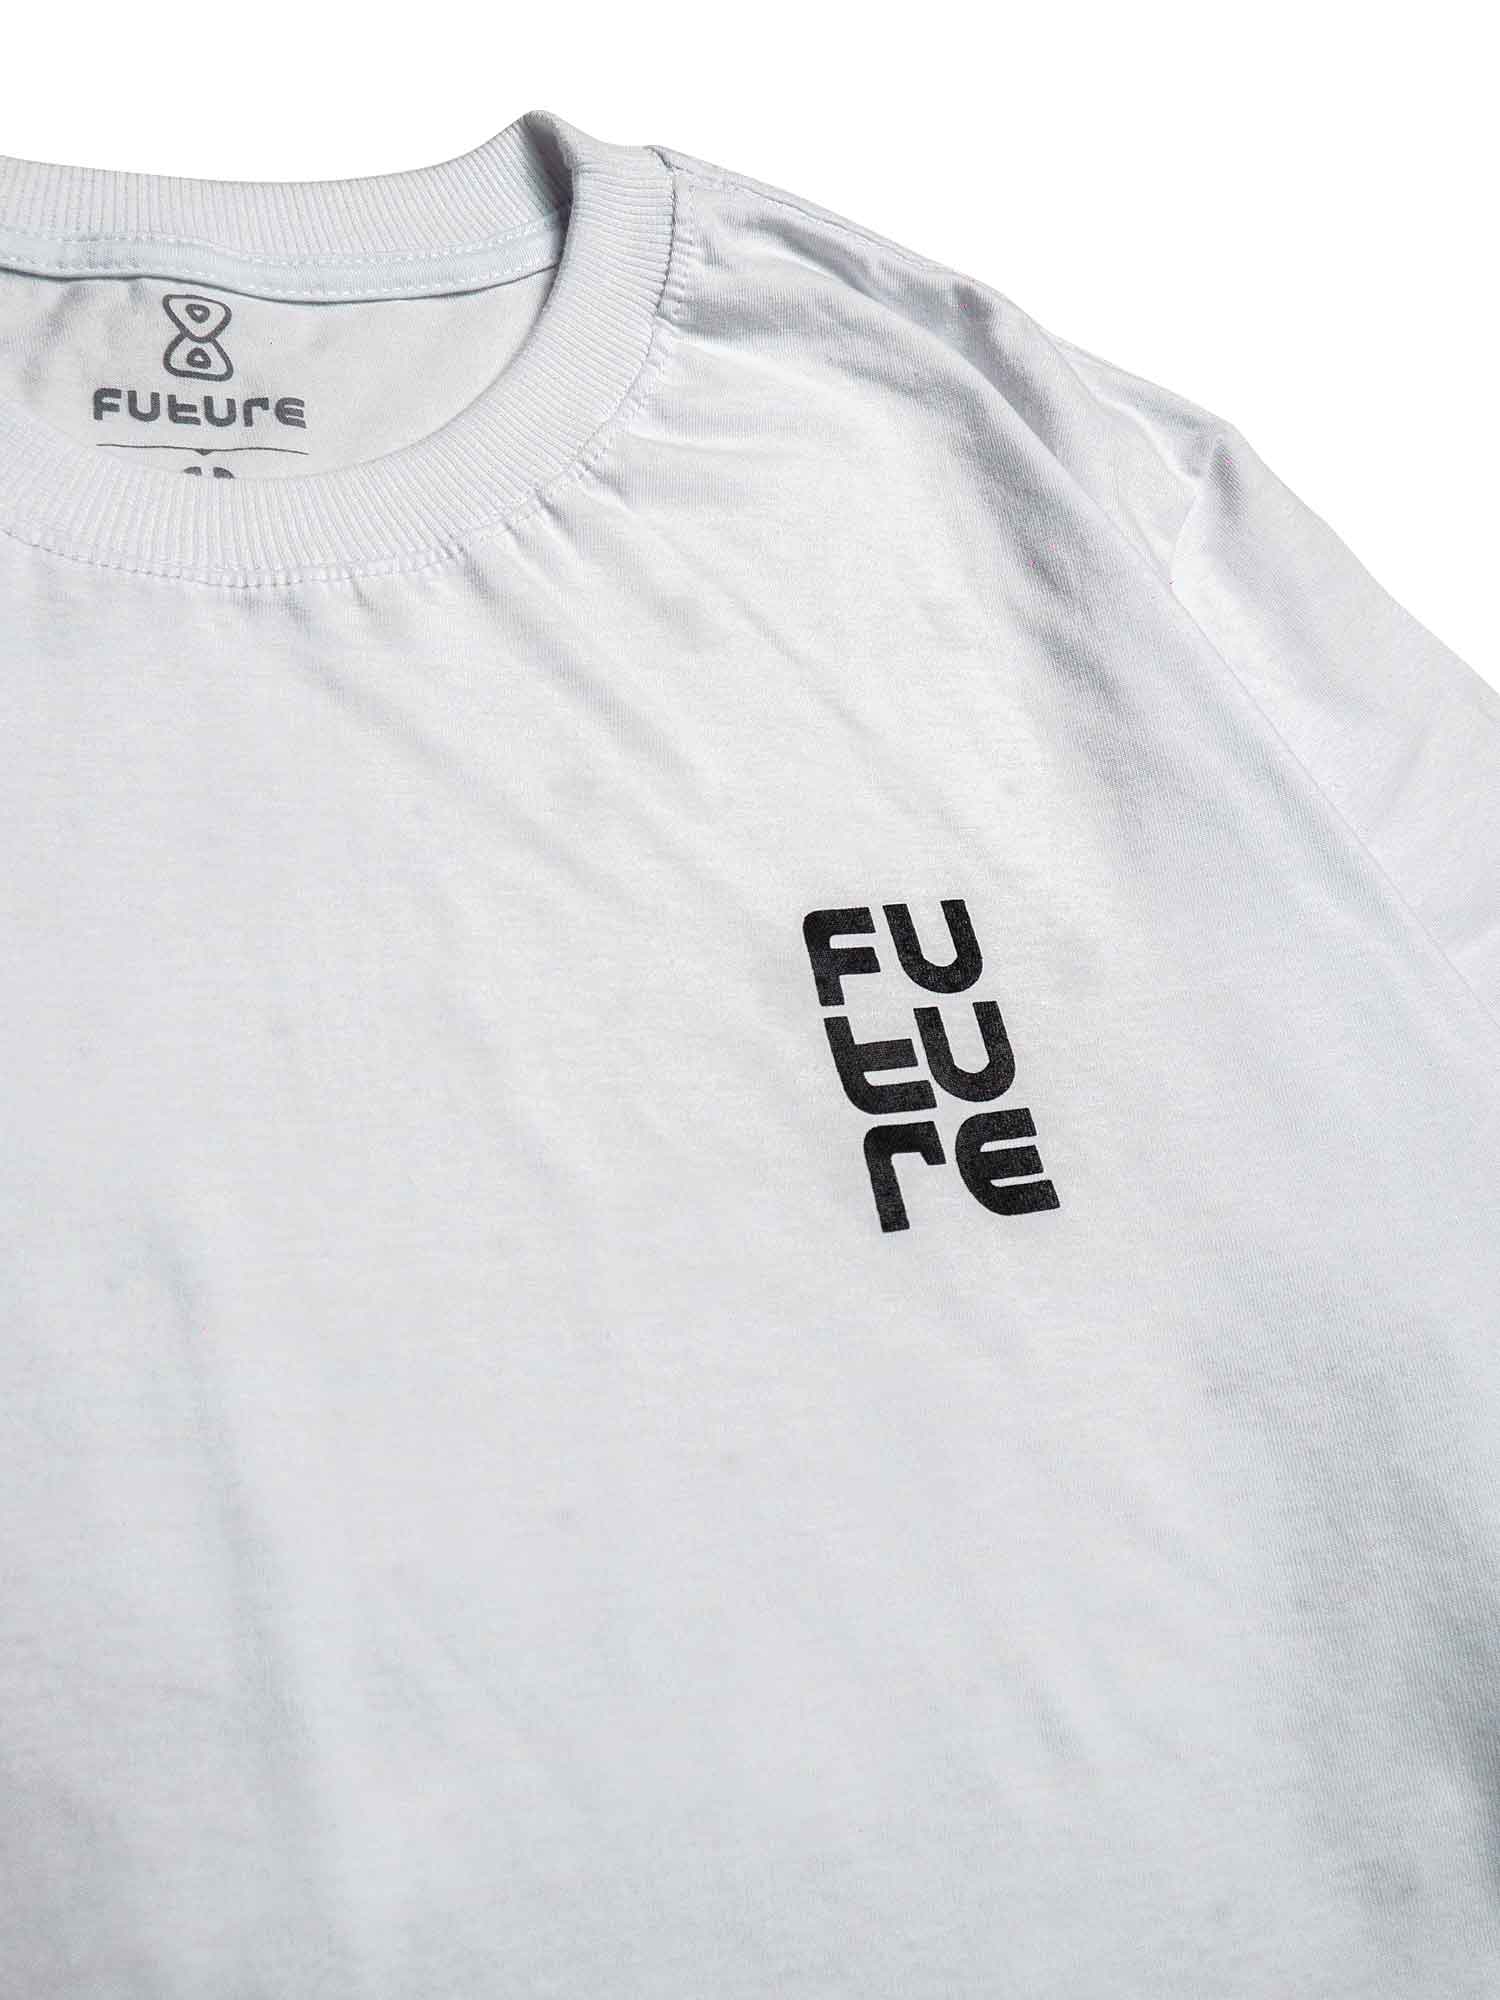 Camiseta-Future-Texturized-Branca-Frente-Close